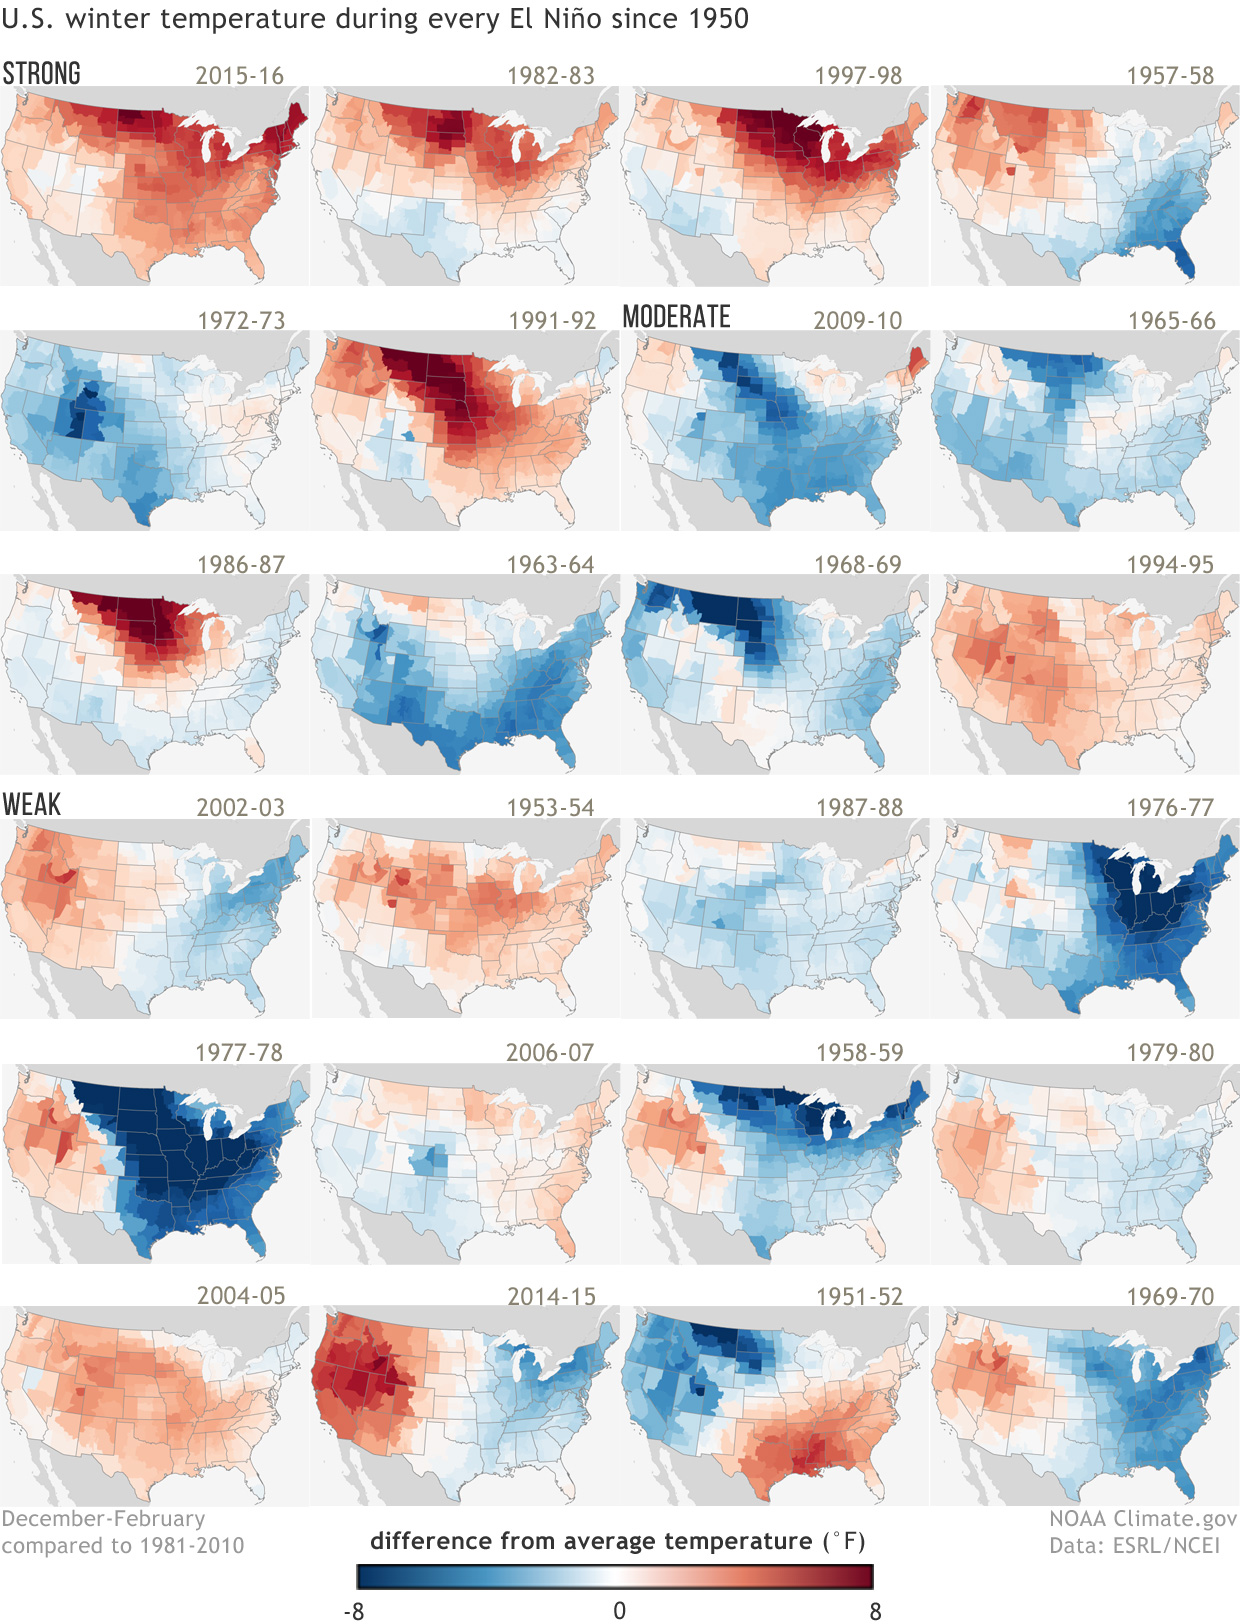 U.S. winter temperatures for every El Niño since 1950 NOAA Climate.gov